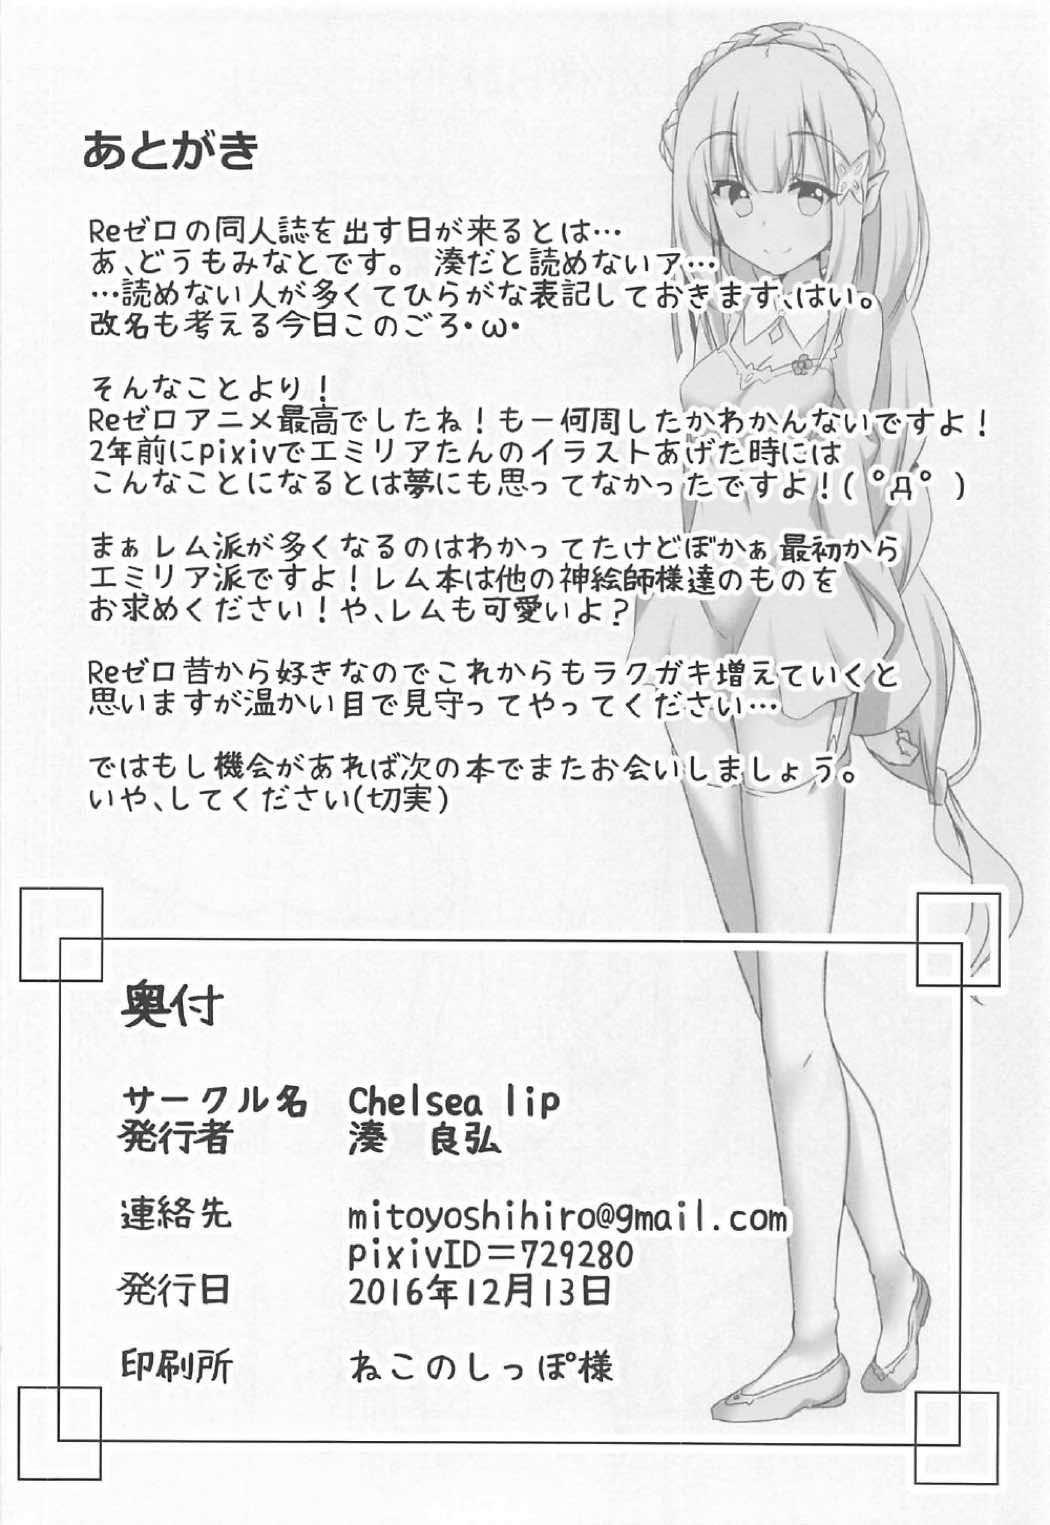 Hymen Uchi no Heroine Chouzetsu Choroin - Re zero kara hajimeru isekai seikatsu Mistress - Page 21